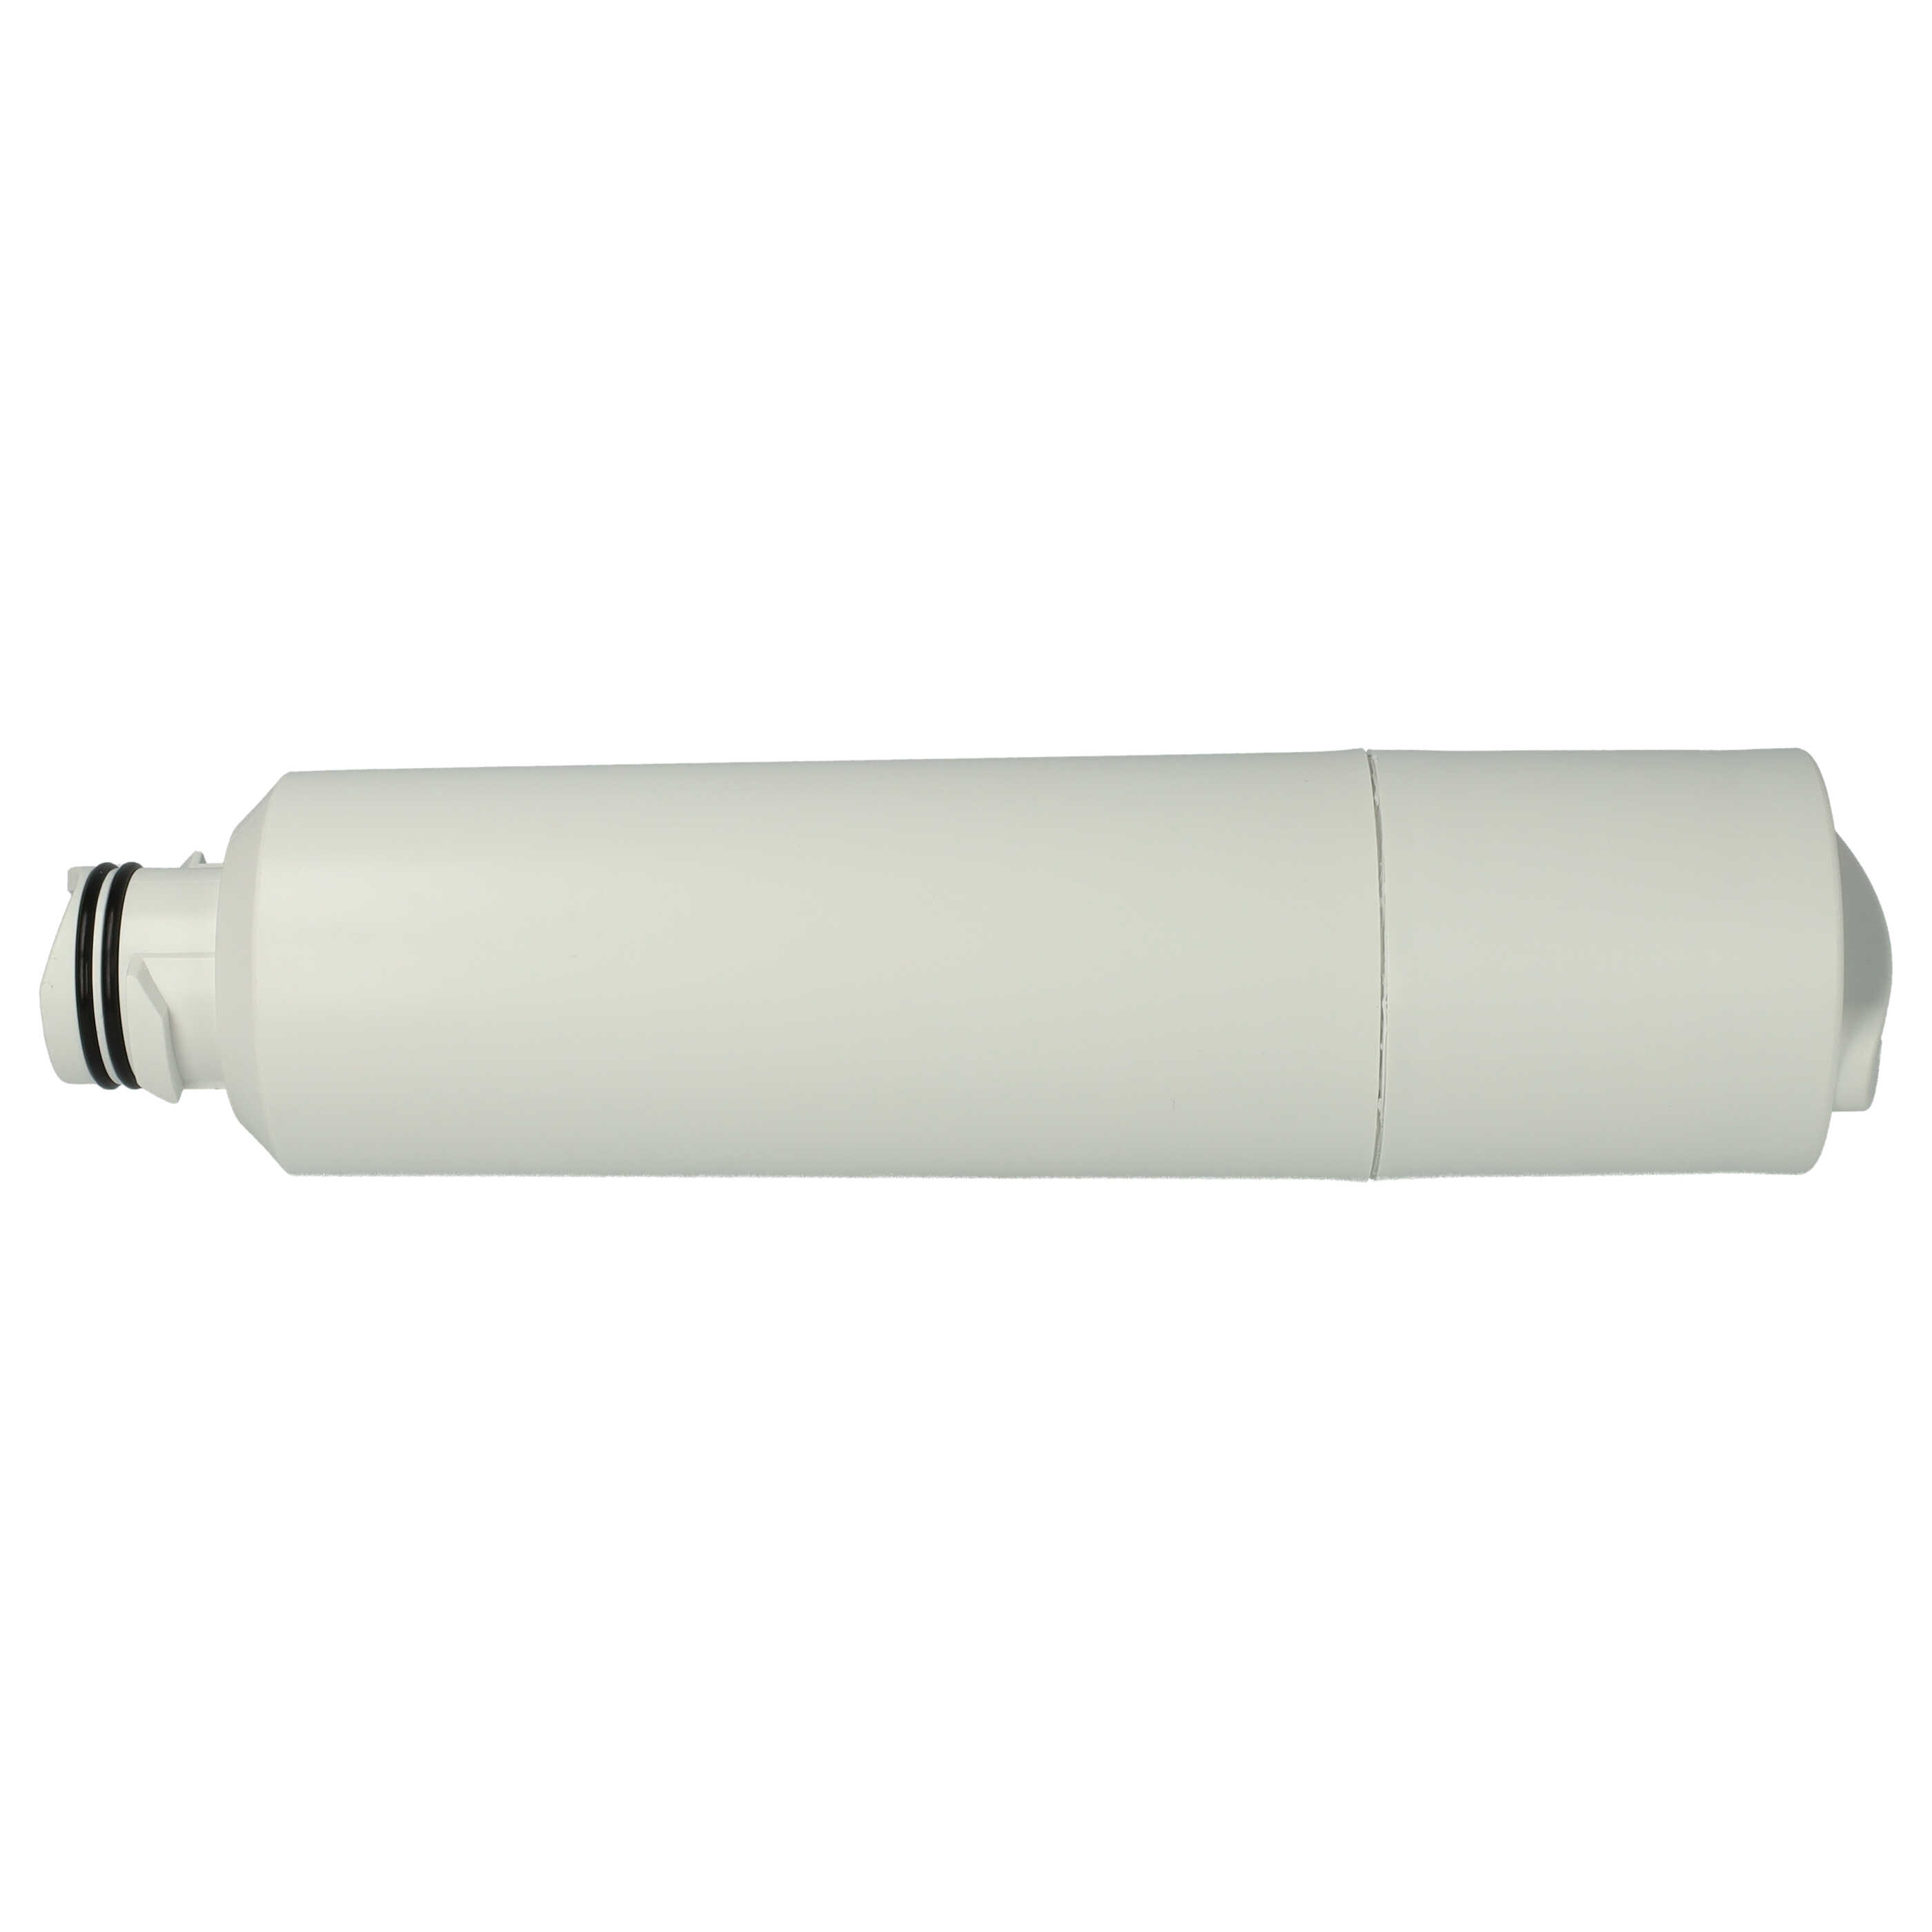 Fridge Water Filter replaces Samsung DA29-00020A, DA29-00020BF, DA29-00020BM for Side-by-Side Refrigerator